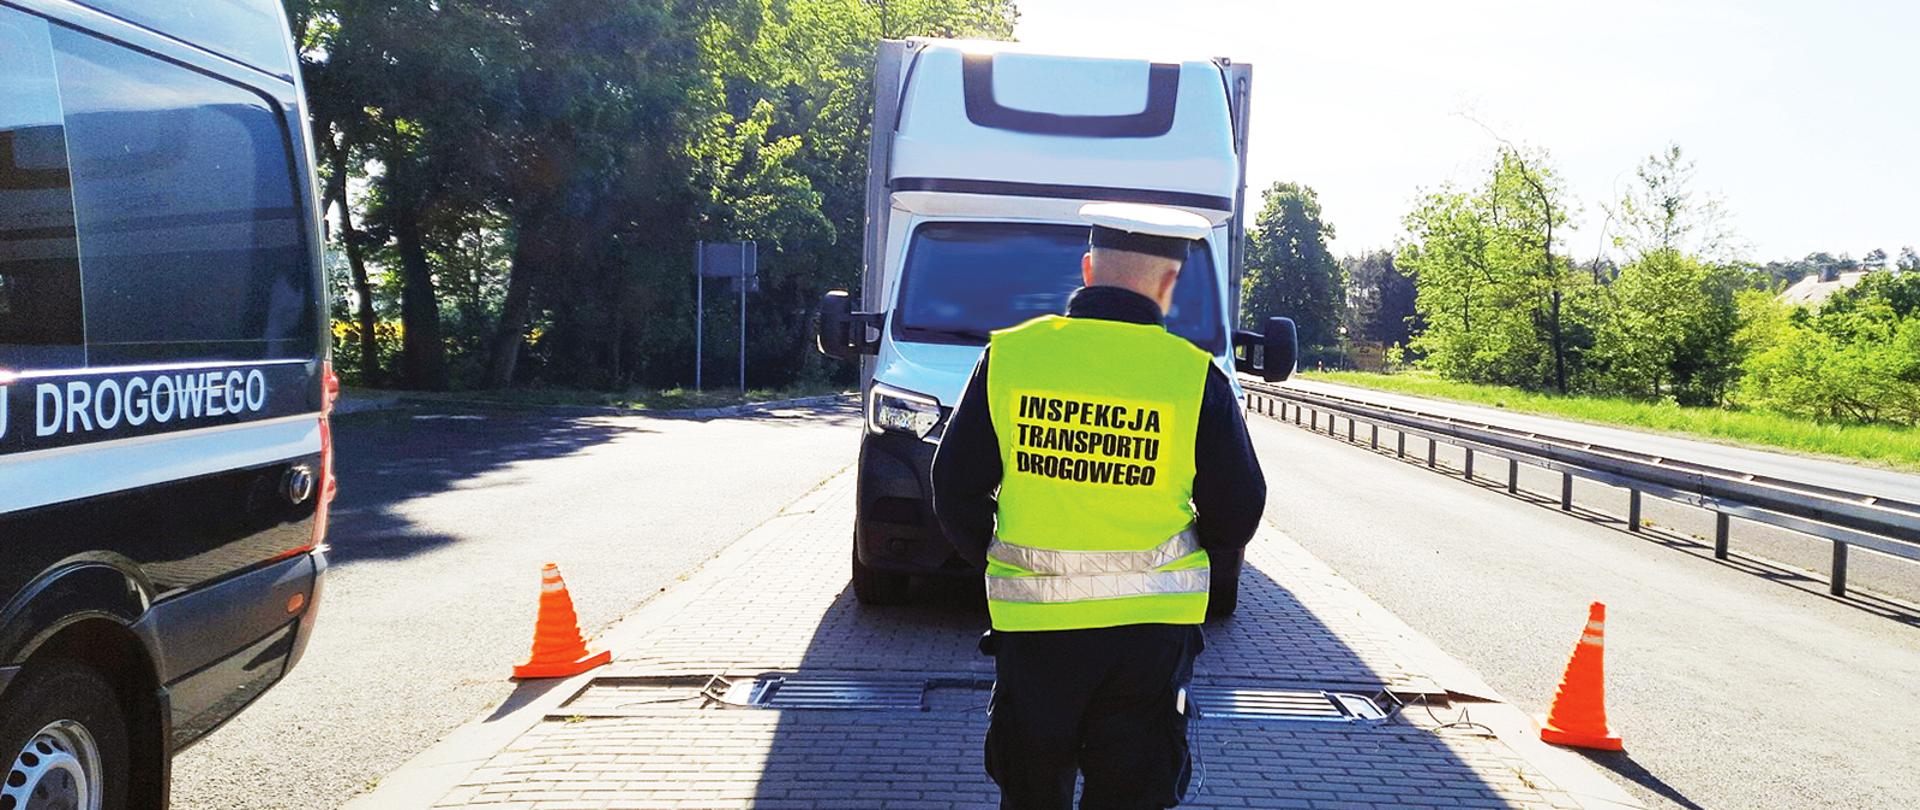 Kontrola konińskich inspektorów wielkopolskiej Inspekcji Transportu Drogowego. W centrum inspektor ITD naprowadza jeden z pojazdów na inspekcyjne wagi. Przed nim, jadący w jego stronę, dostawczak. Po lewej inspekcyjny furgon, po prawej droga.